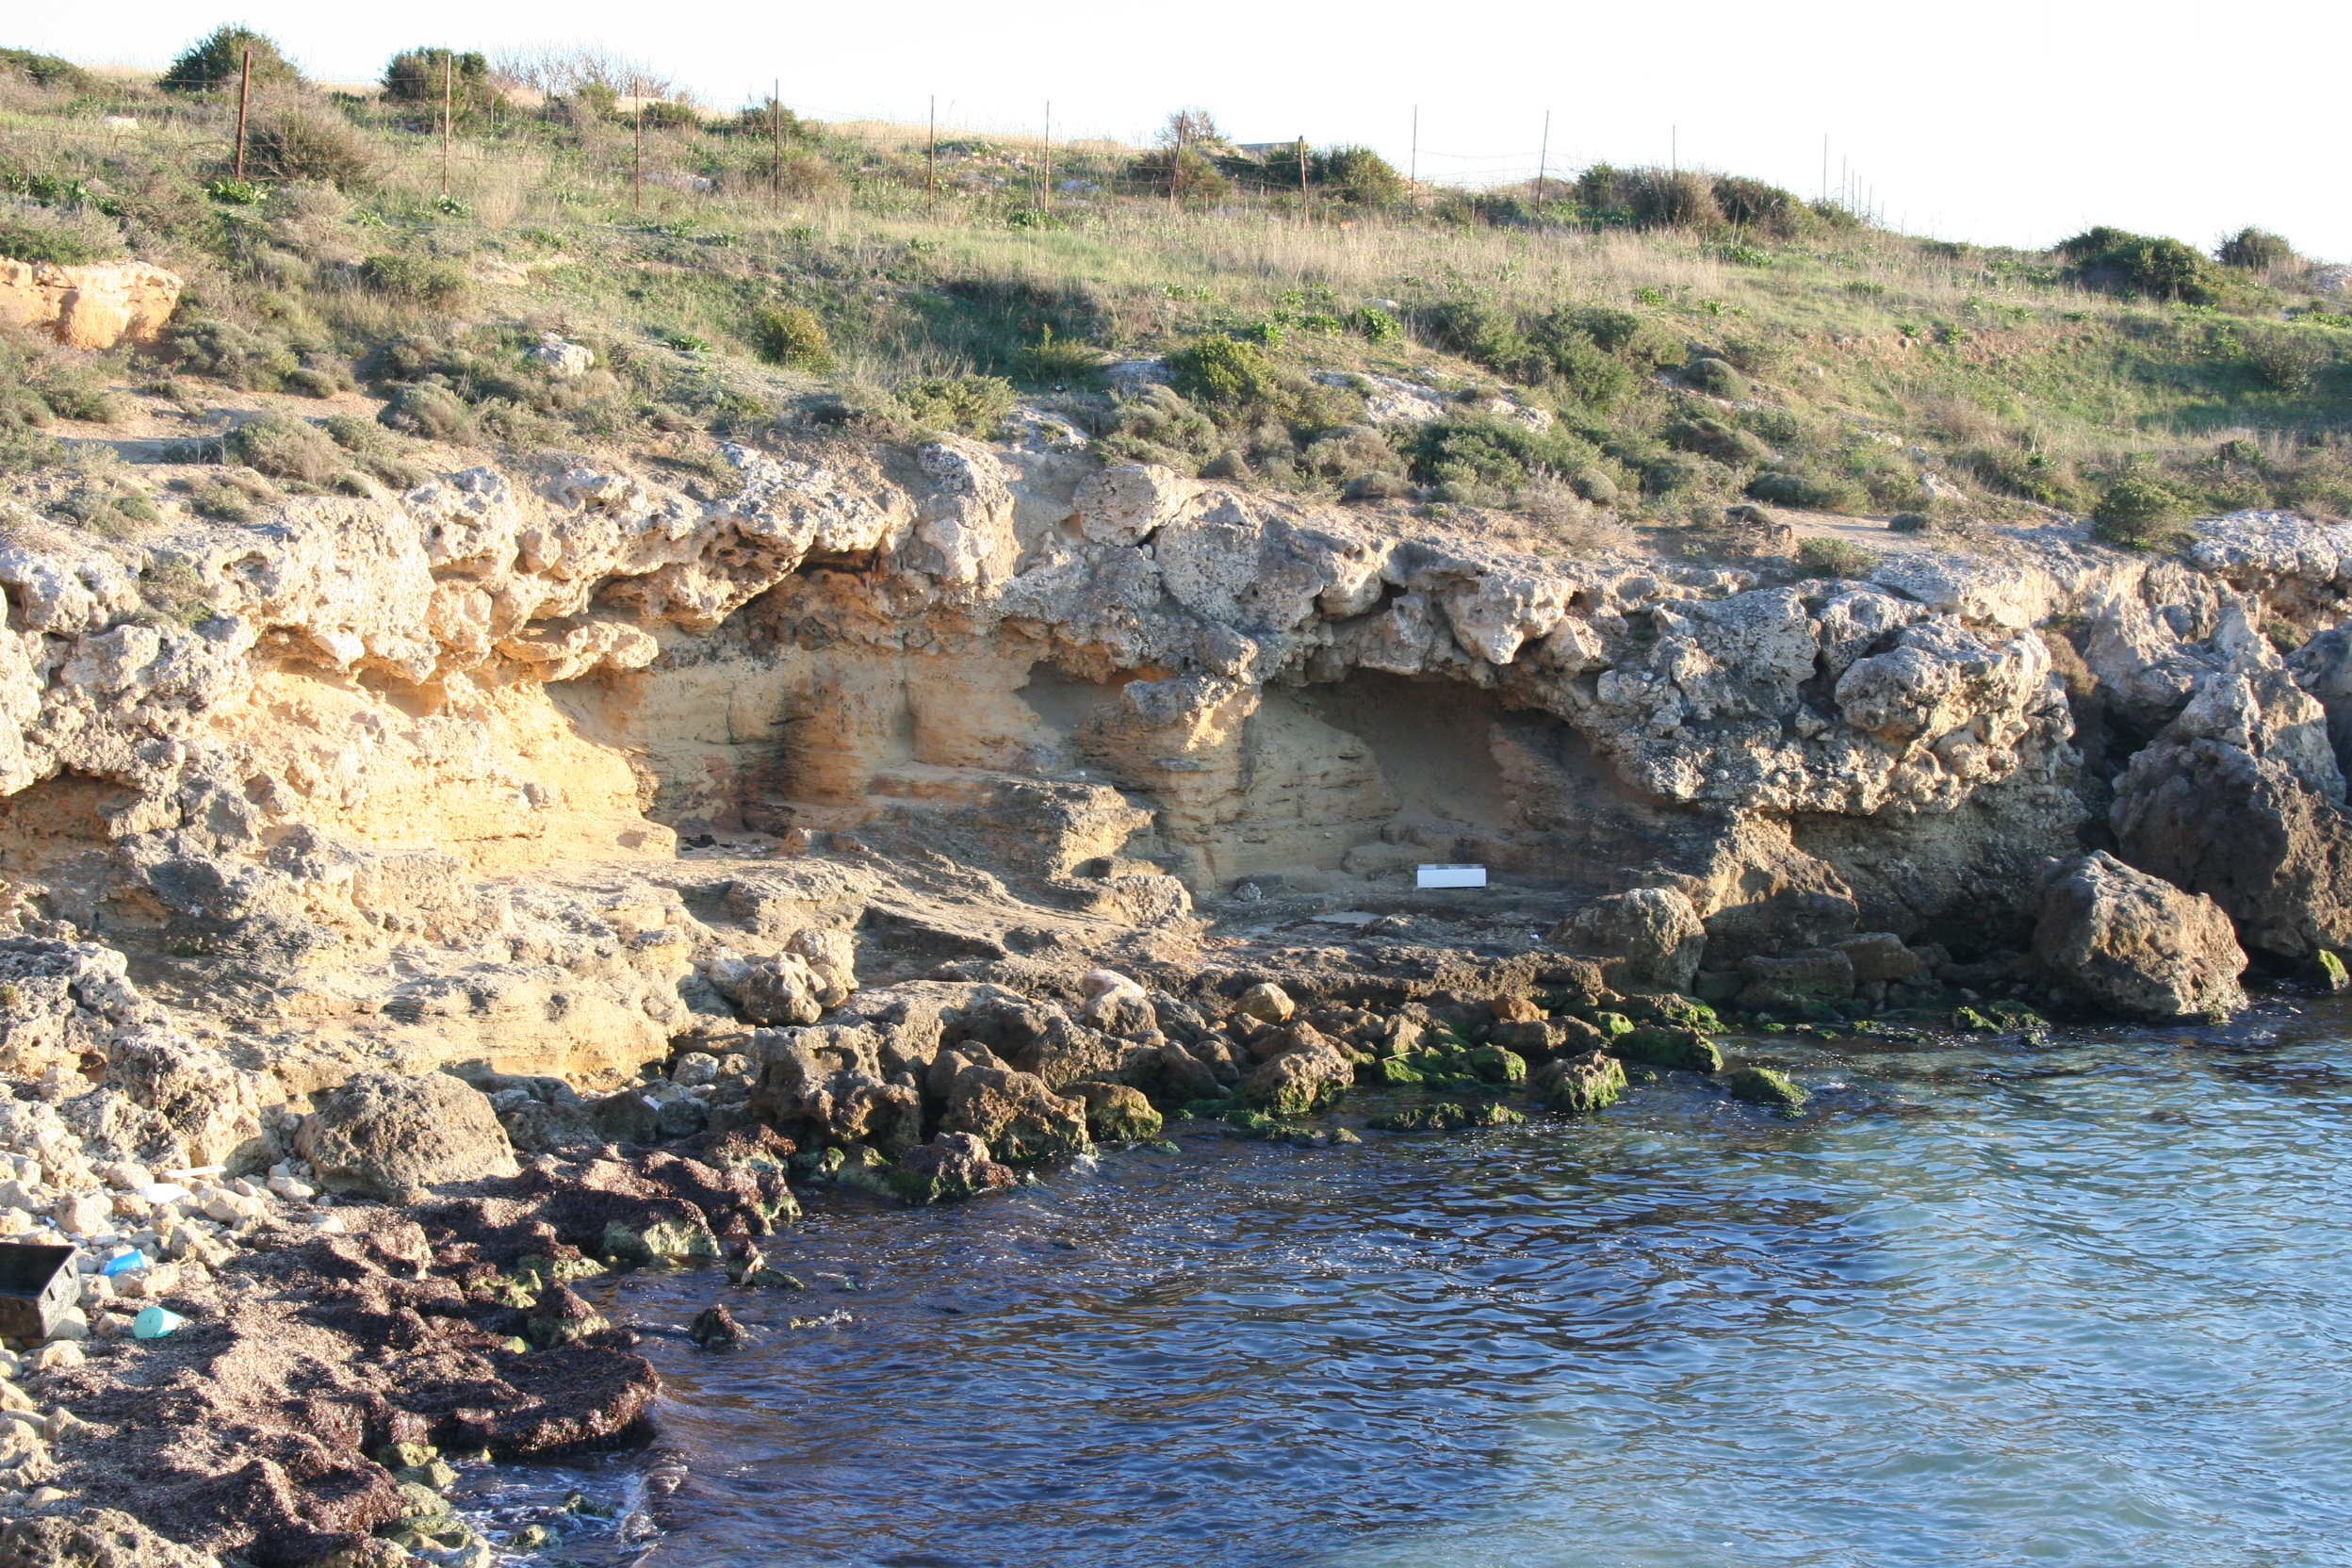 La successione dei depositi dei terrazzi marini del Pleistocene Medio e Superiore -Tirreniano (Tarentiano)  lungo la costa a sud del capoluogo Jonico